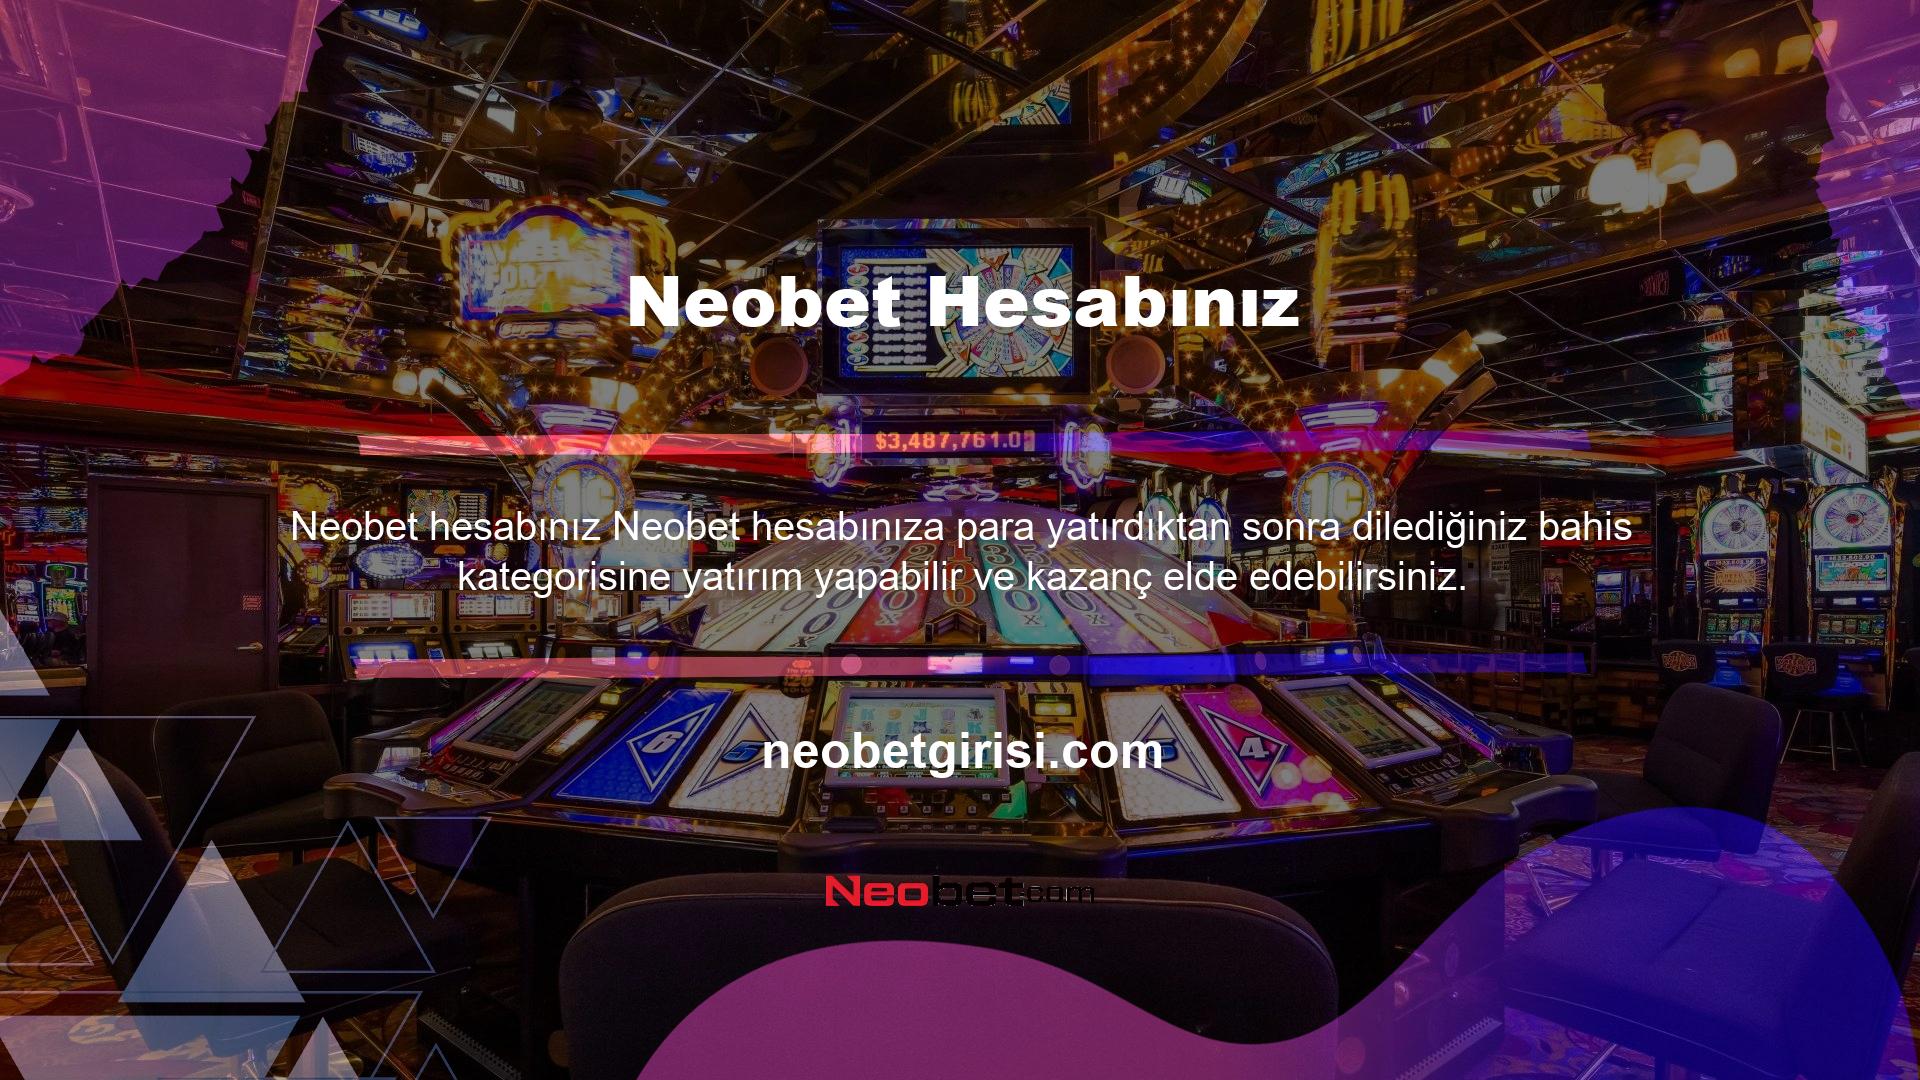 Neobet lisanslı bahis siteleri, kullanıcılardan sık sık illegal bahis sitelerinden biri olduğu için Neobet bağlanamadıkları yönündeki geri bildirimlere rağmen güncel giriş adresleri ile geçerli bahis hizmetleri sunmaya devam etmektedir